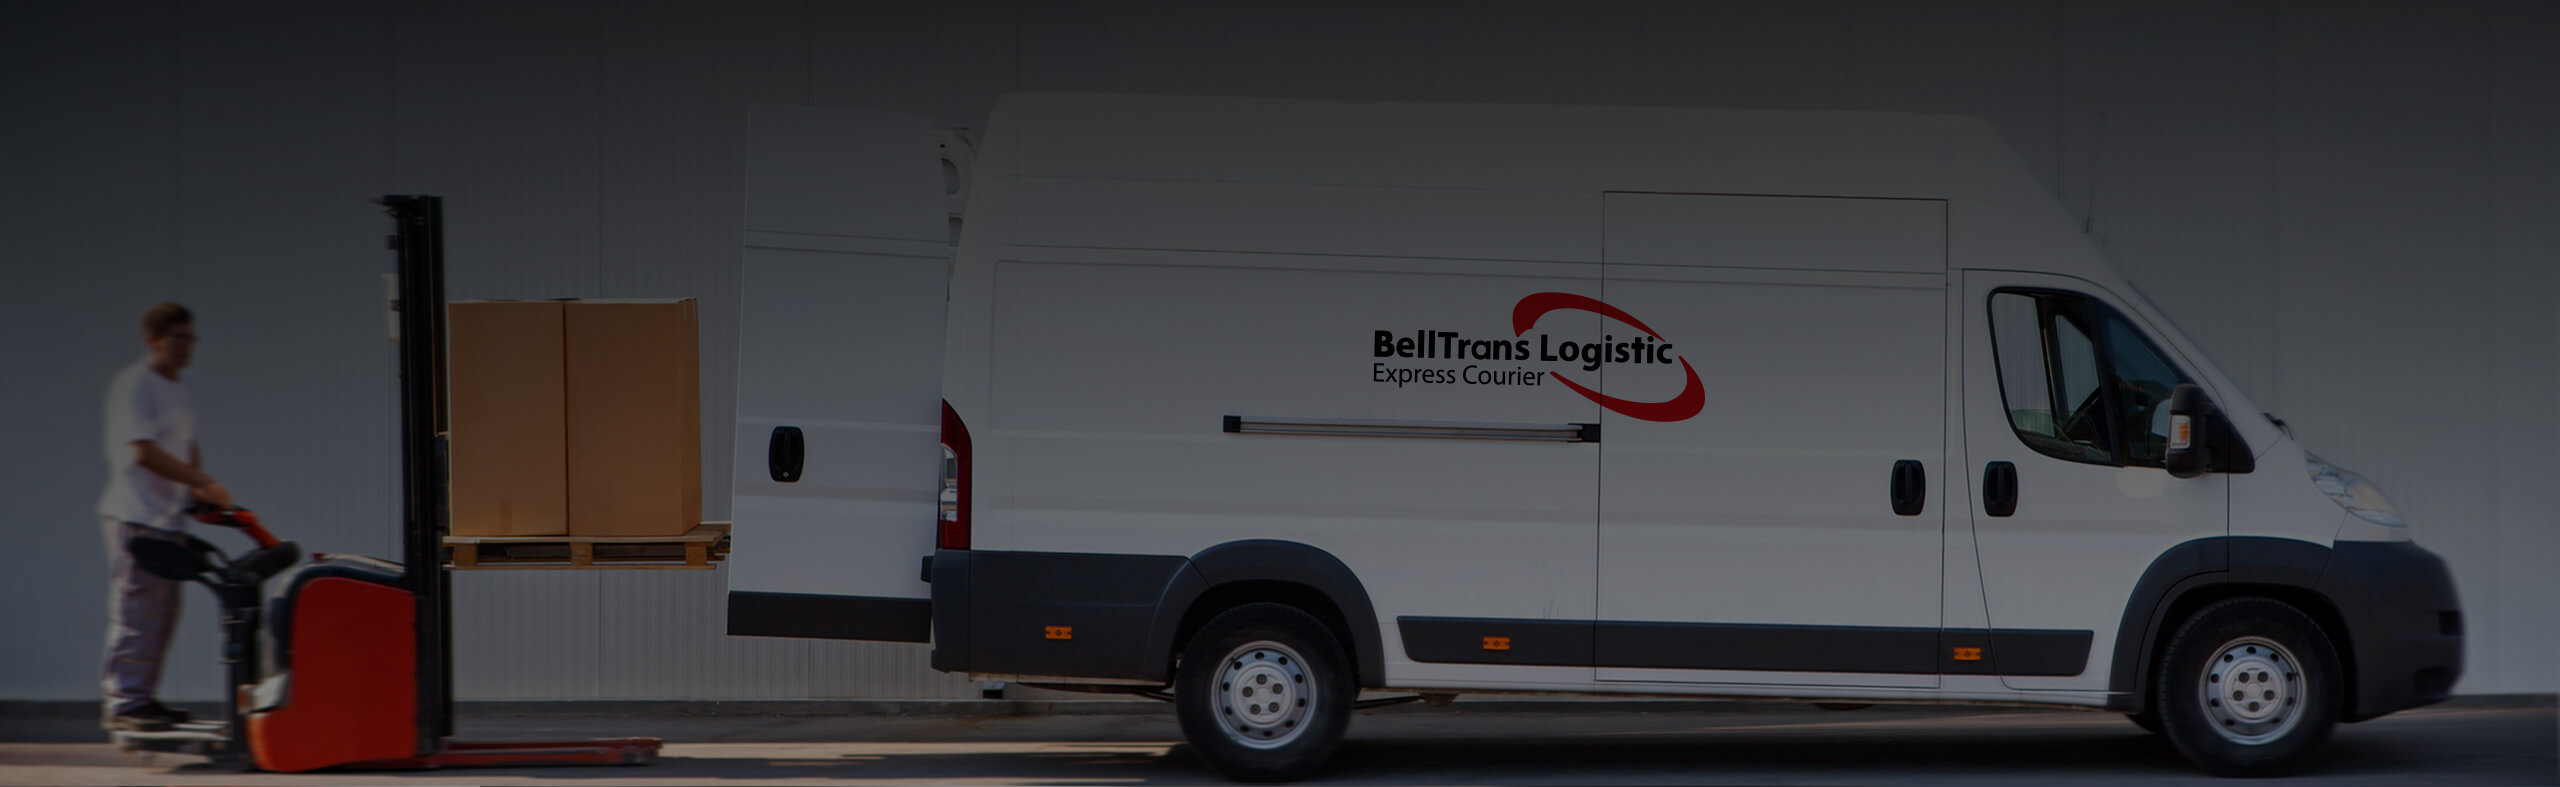 Services - BellTrans Logistics Express Courier